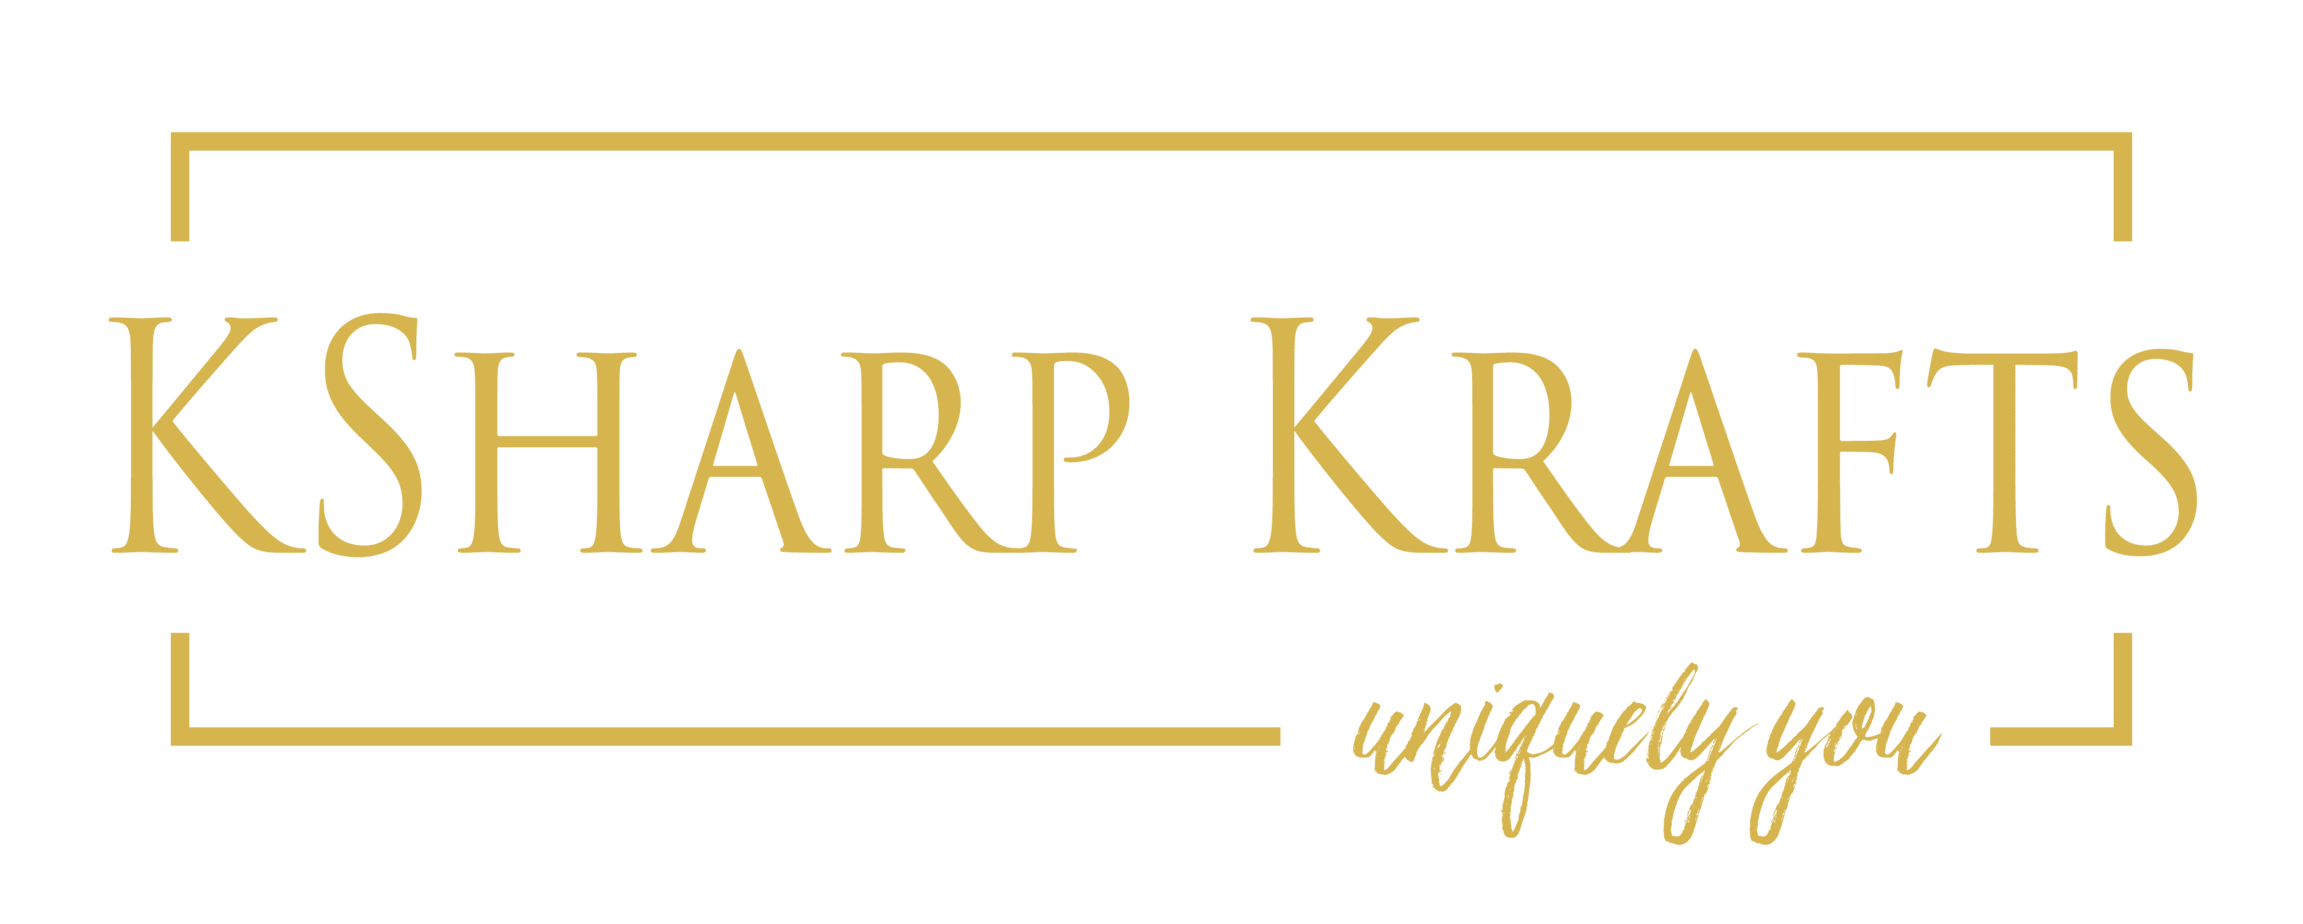 ksharp krafts logo (1)